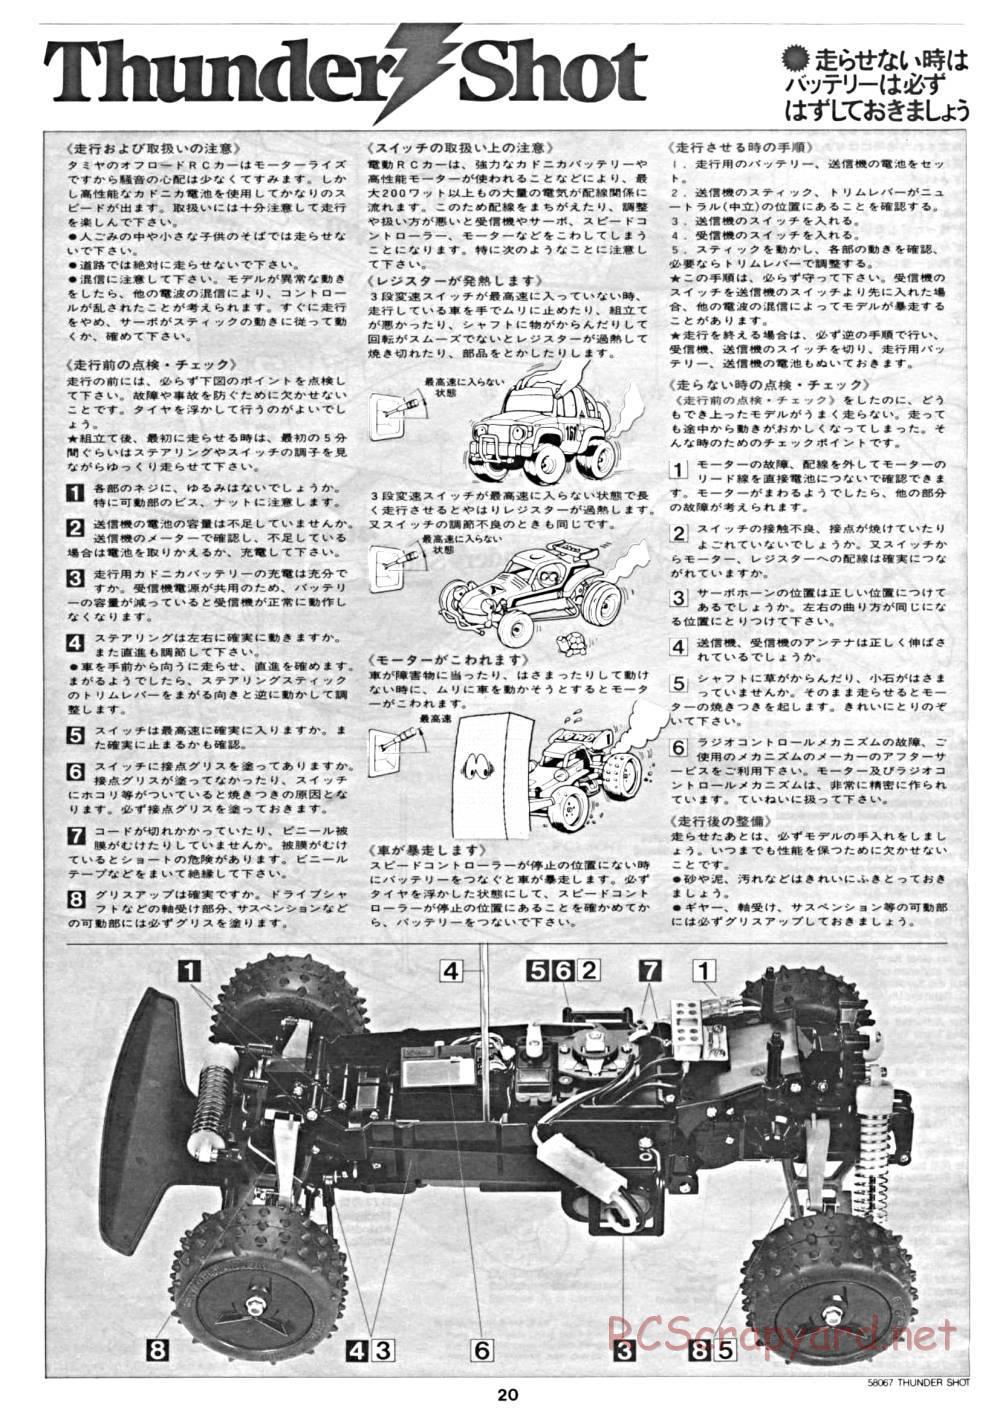 Tamiya - Thunder Shot - 58067 - Manual - Page 20